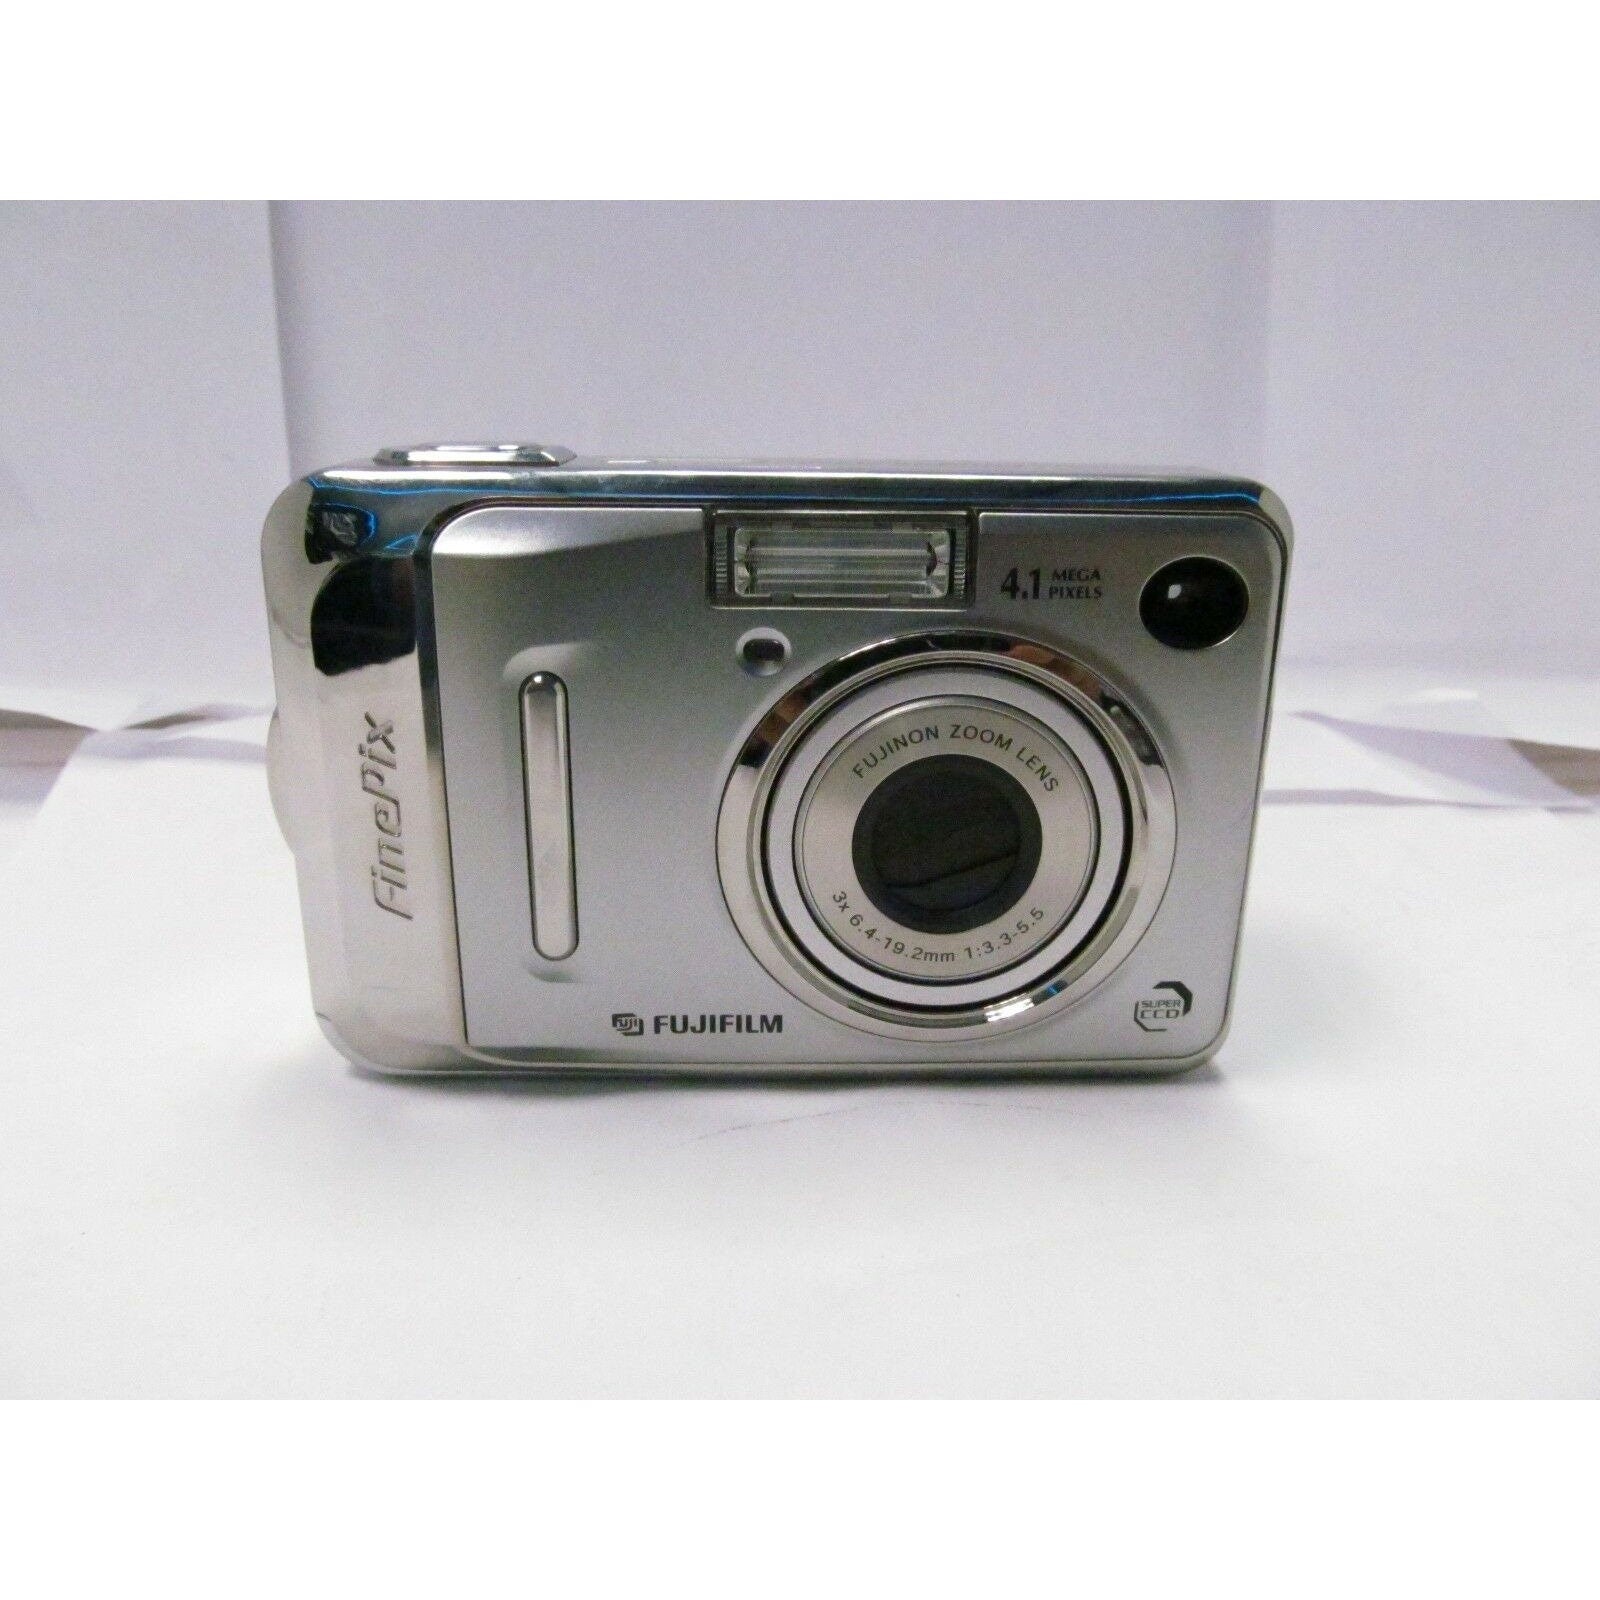 Fujifilm FinePix A400 5.1MP Digital Compact Camera Silver